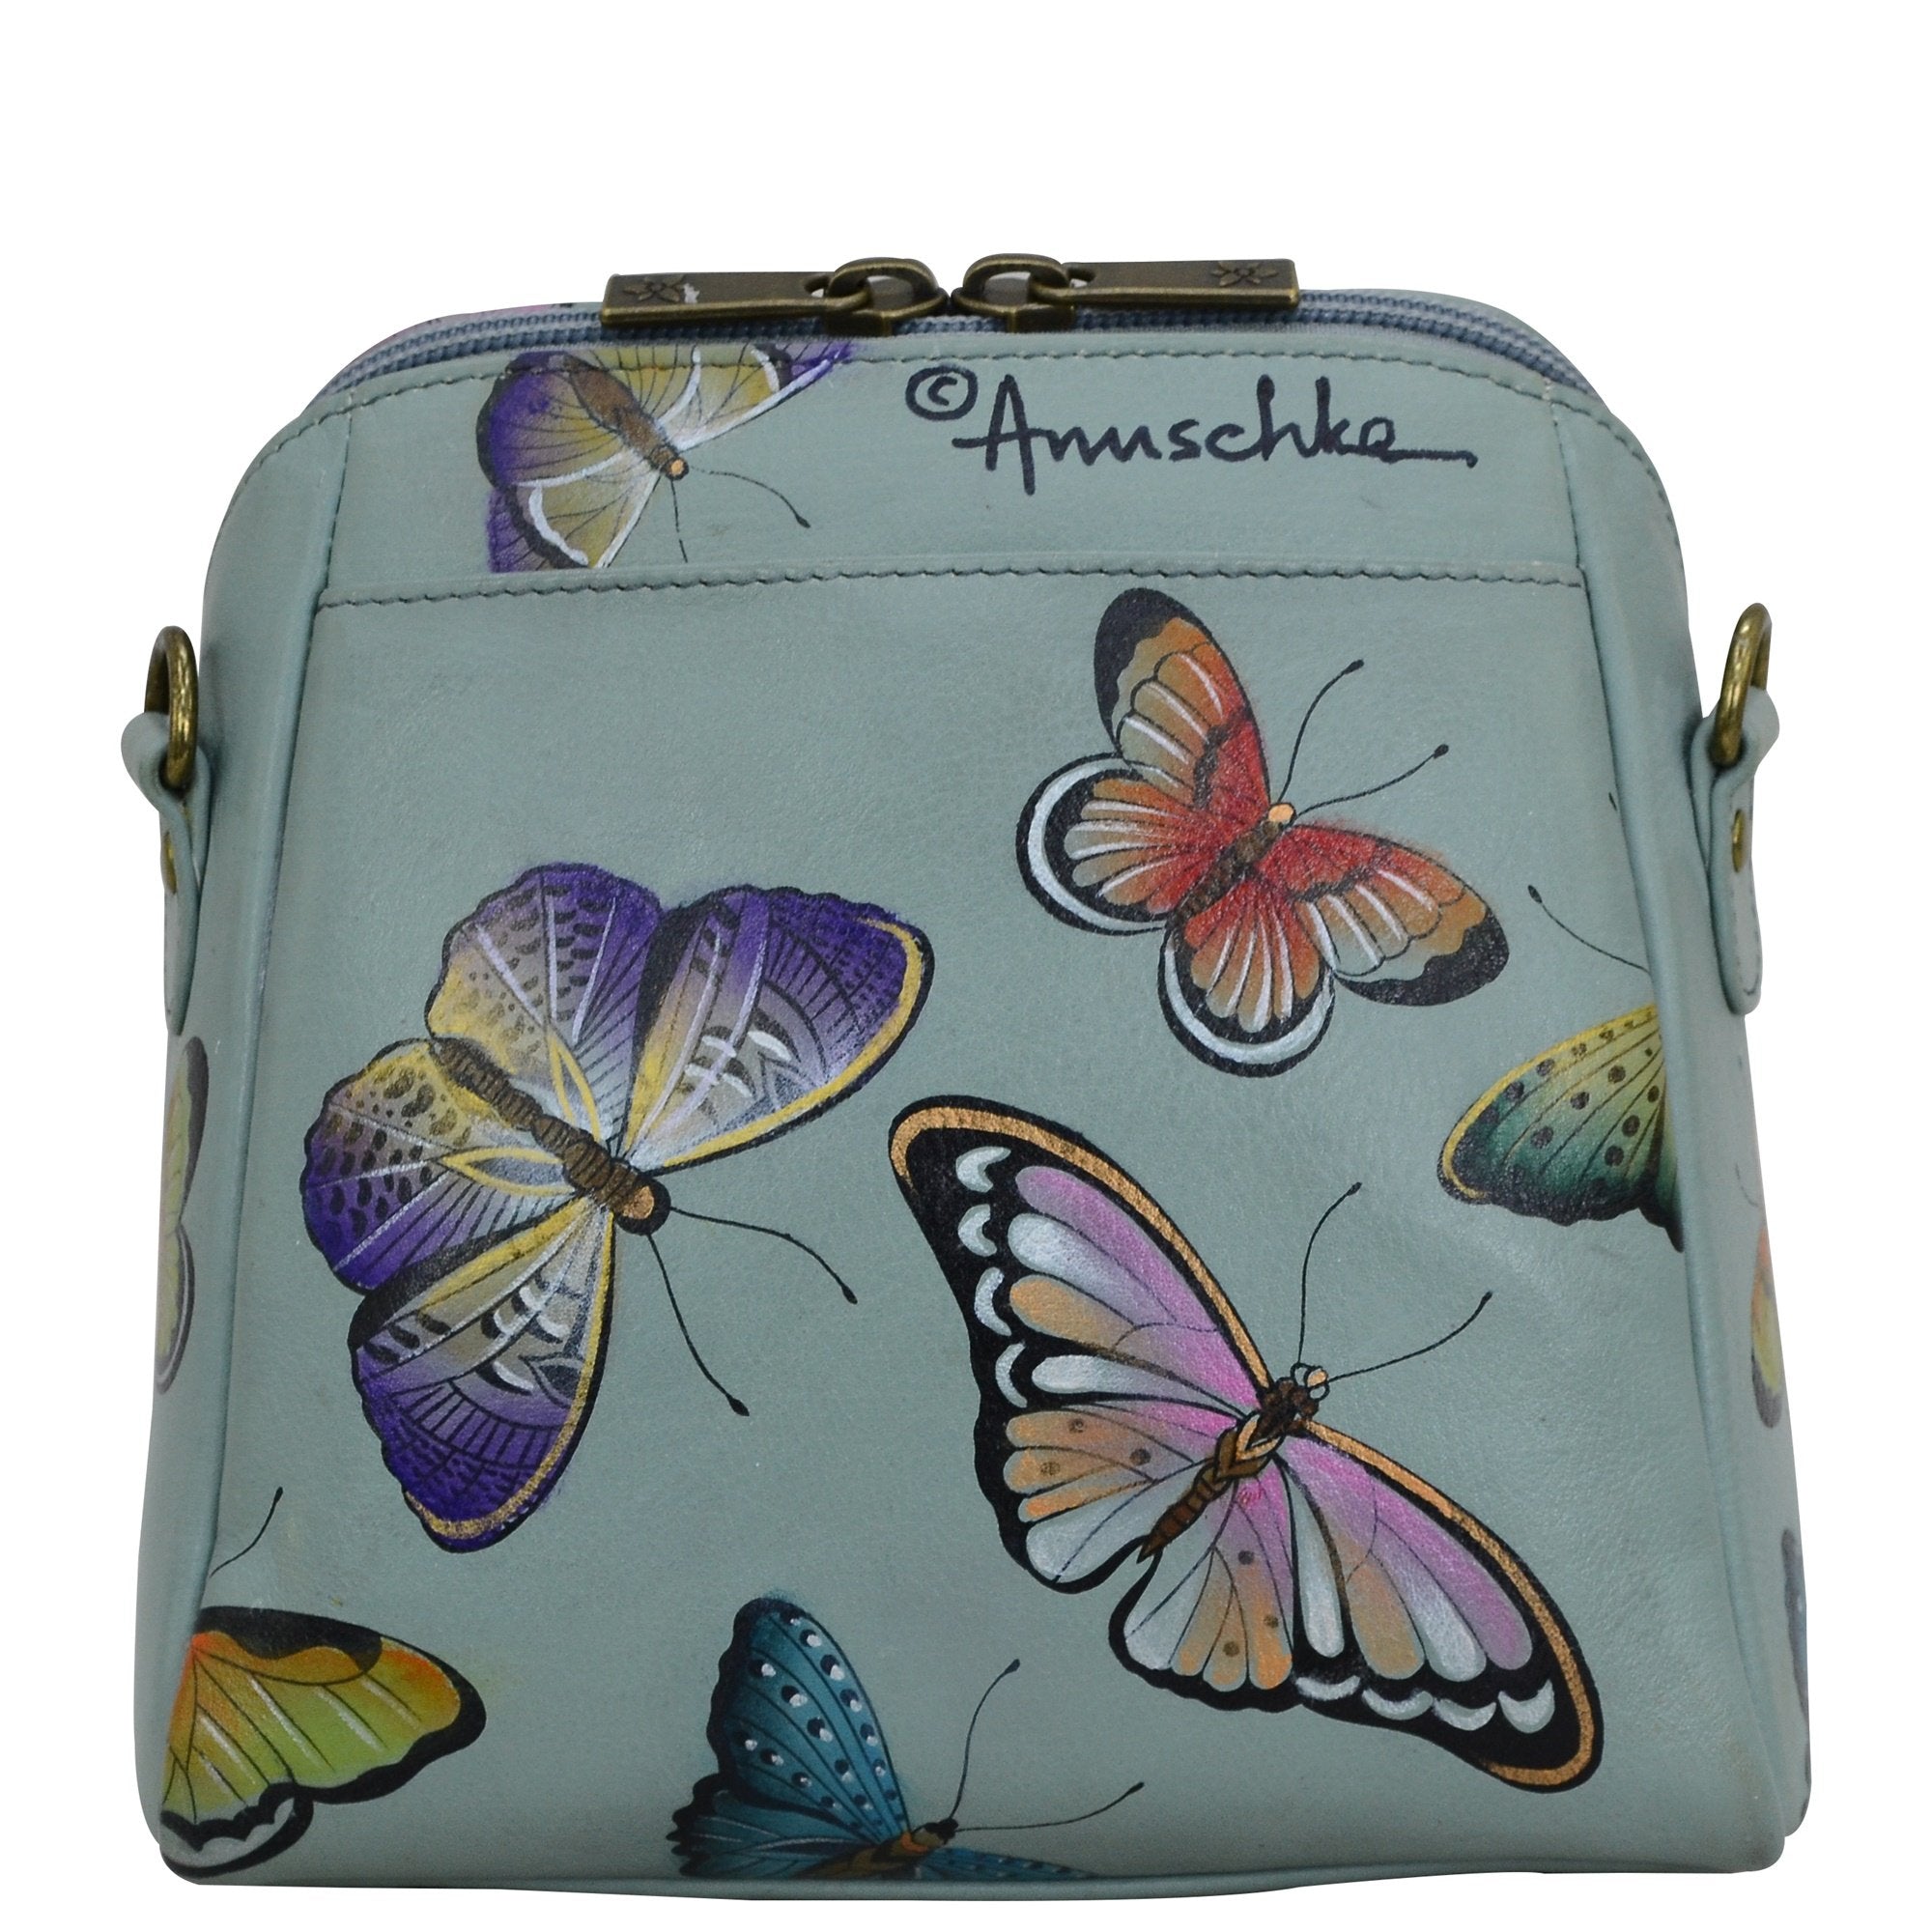 Anuschka Butterfly Heaven Zip Around Travel Organizer